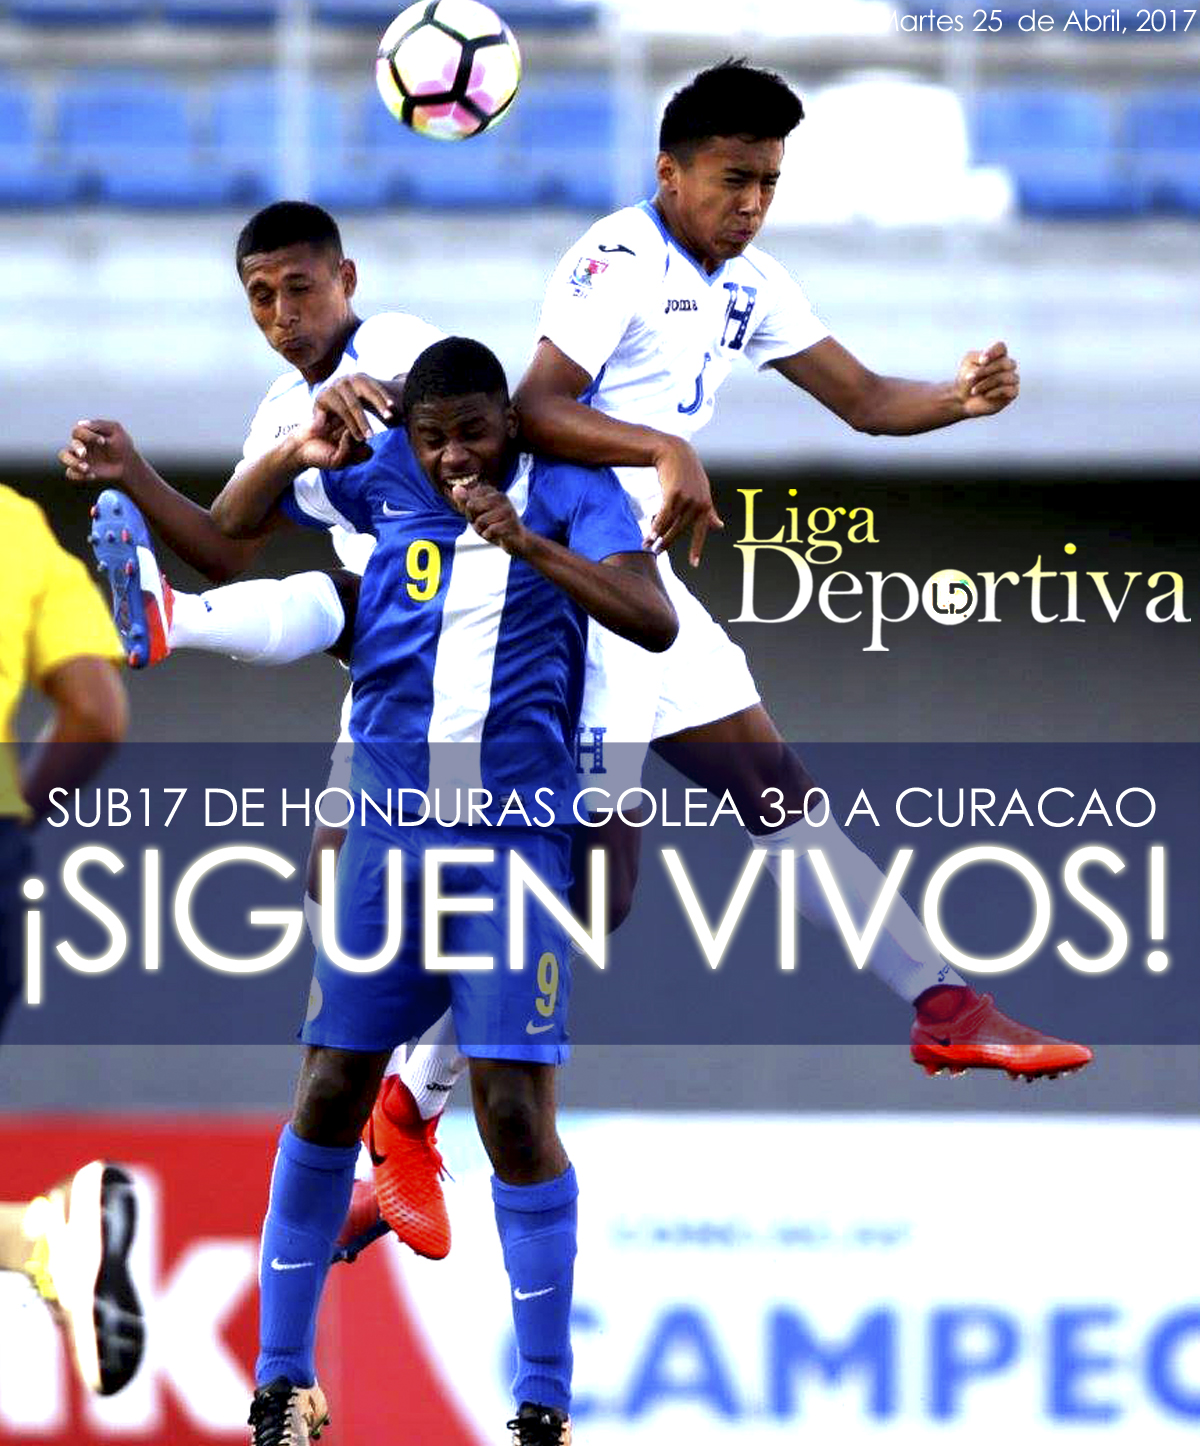 ¡Siguen vivos! Sub17 de Honduras golea 3-0 a Curacao en PreMundial 